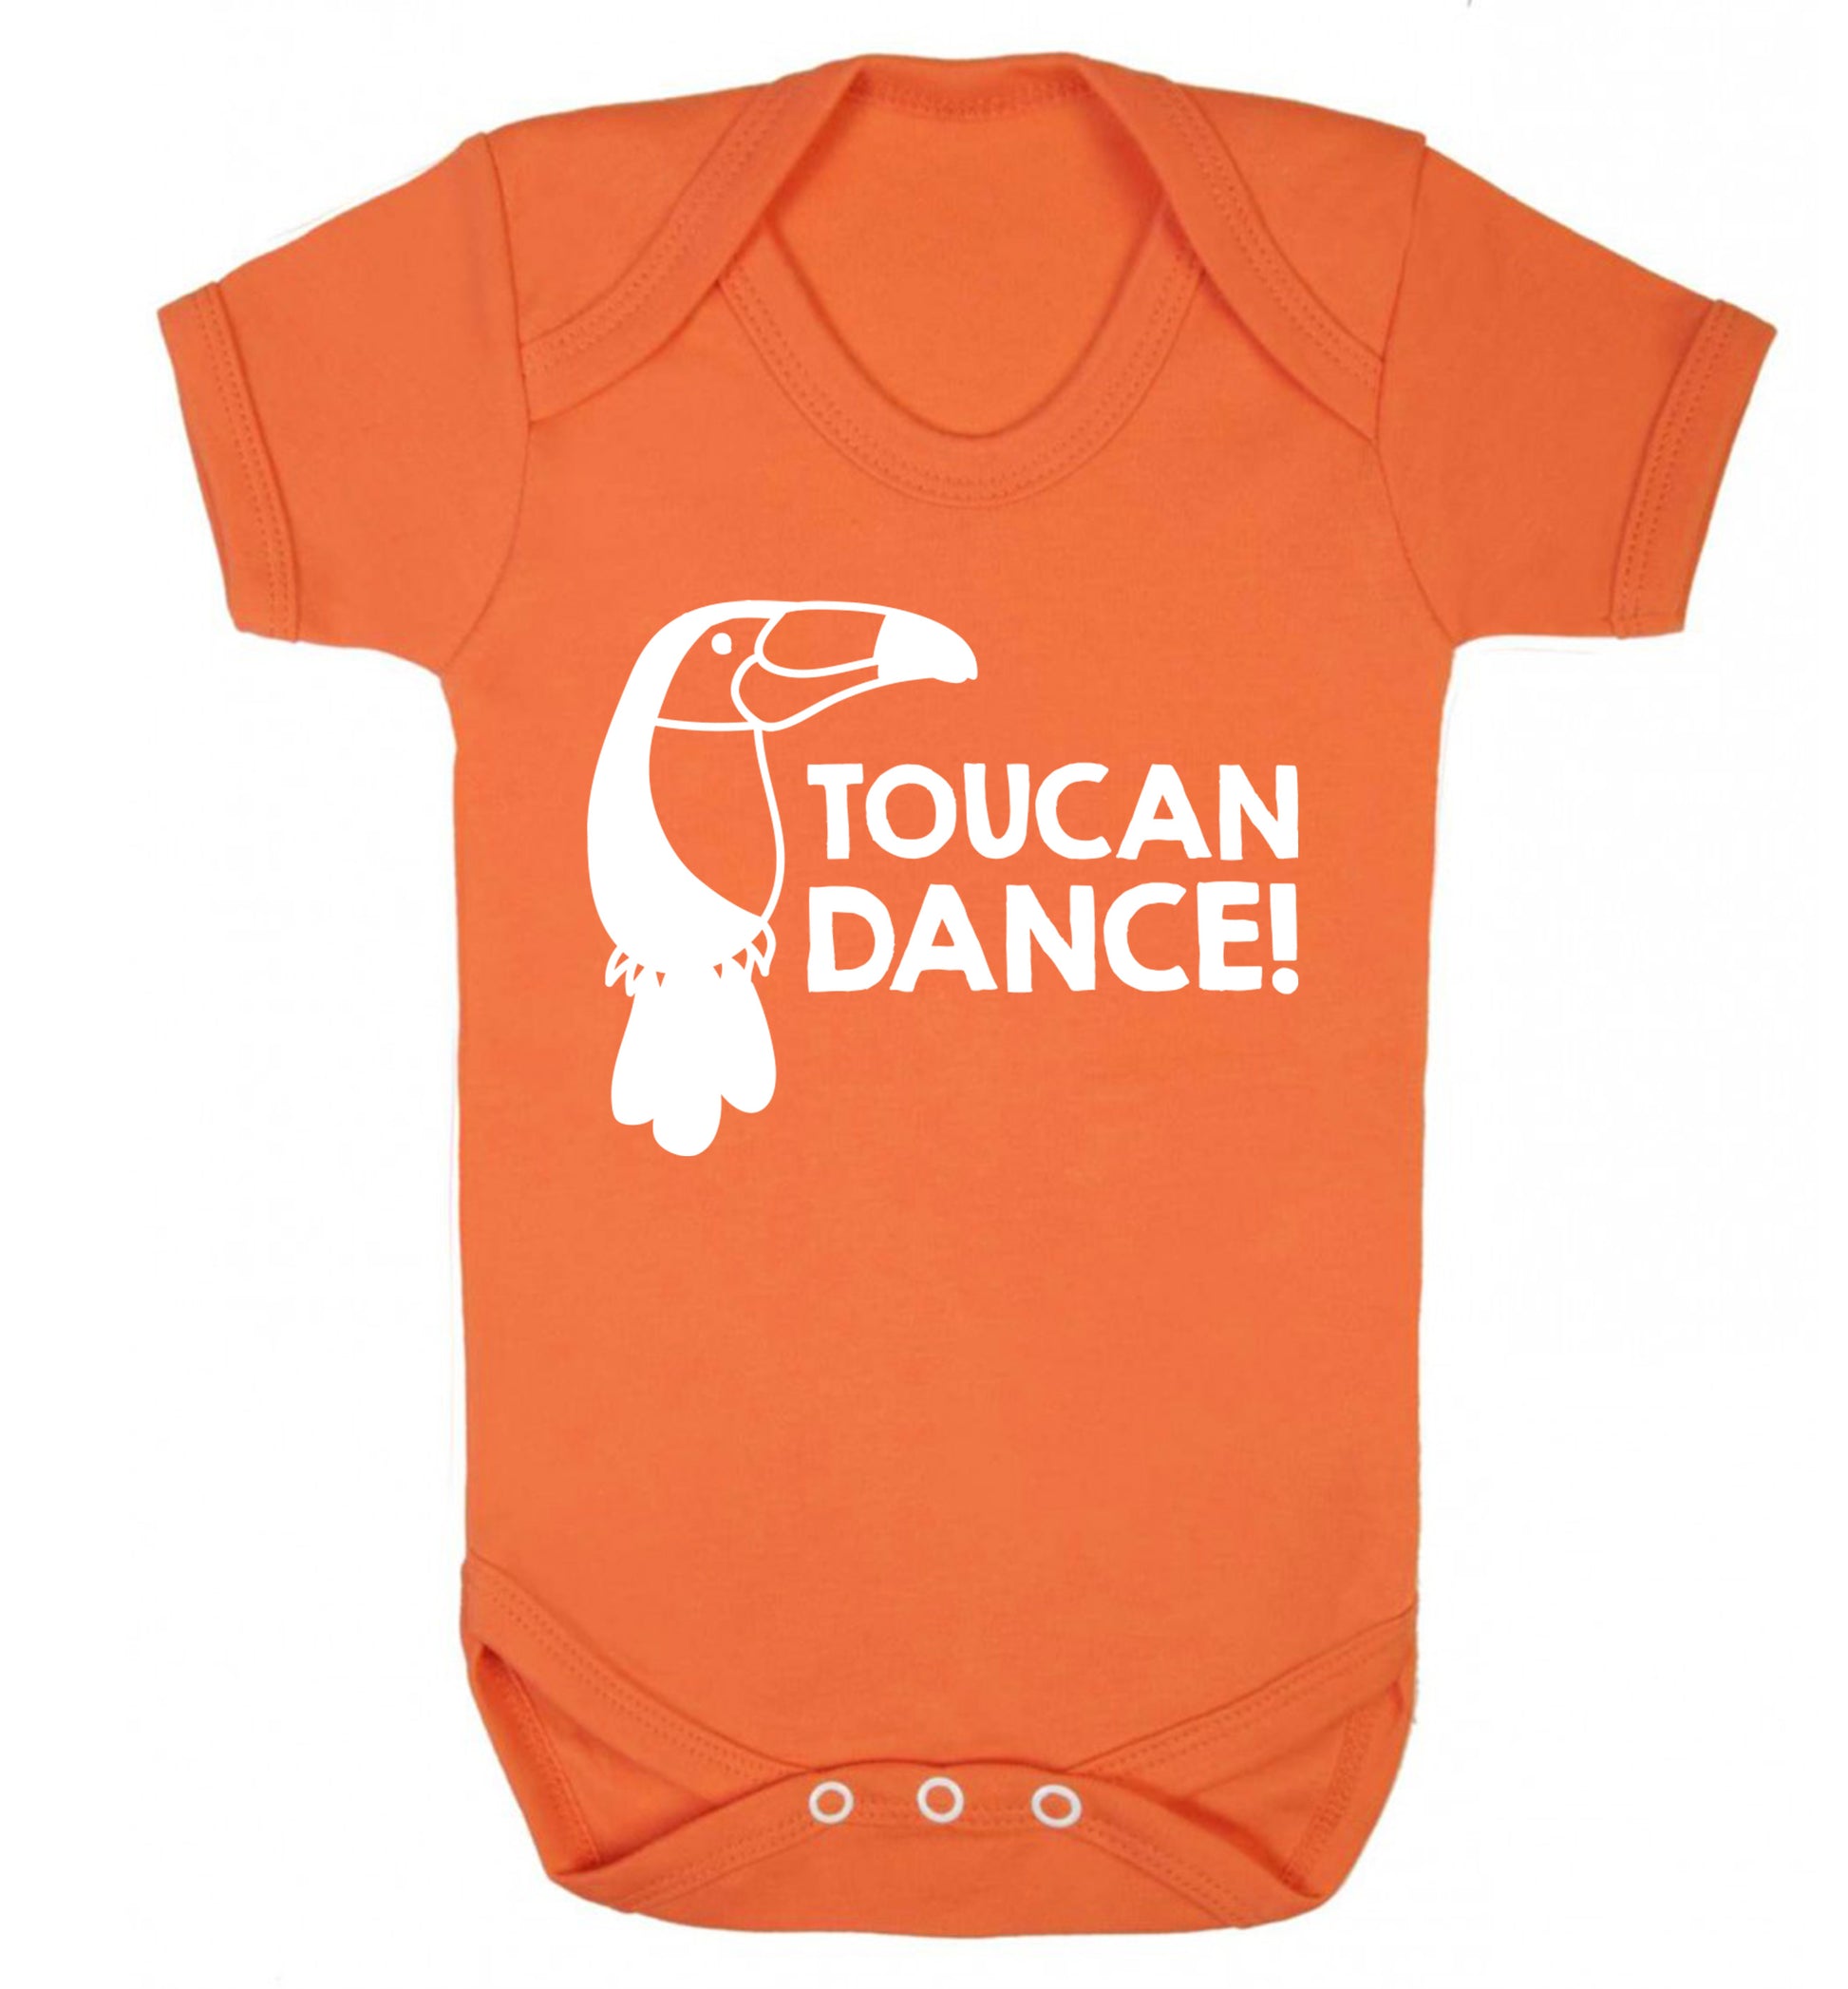 Toucan dance Baby Vest orange 18-24 months